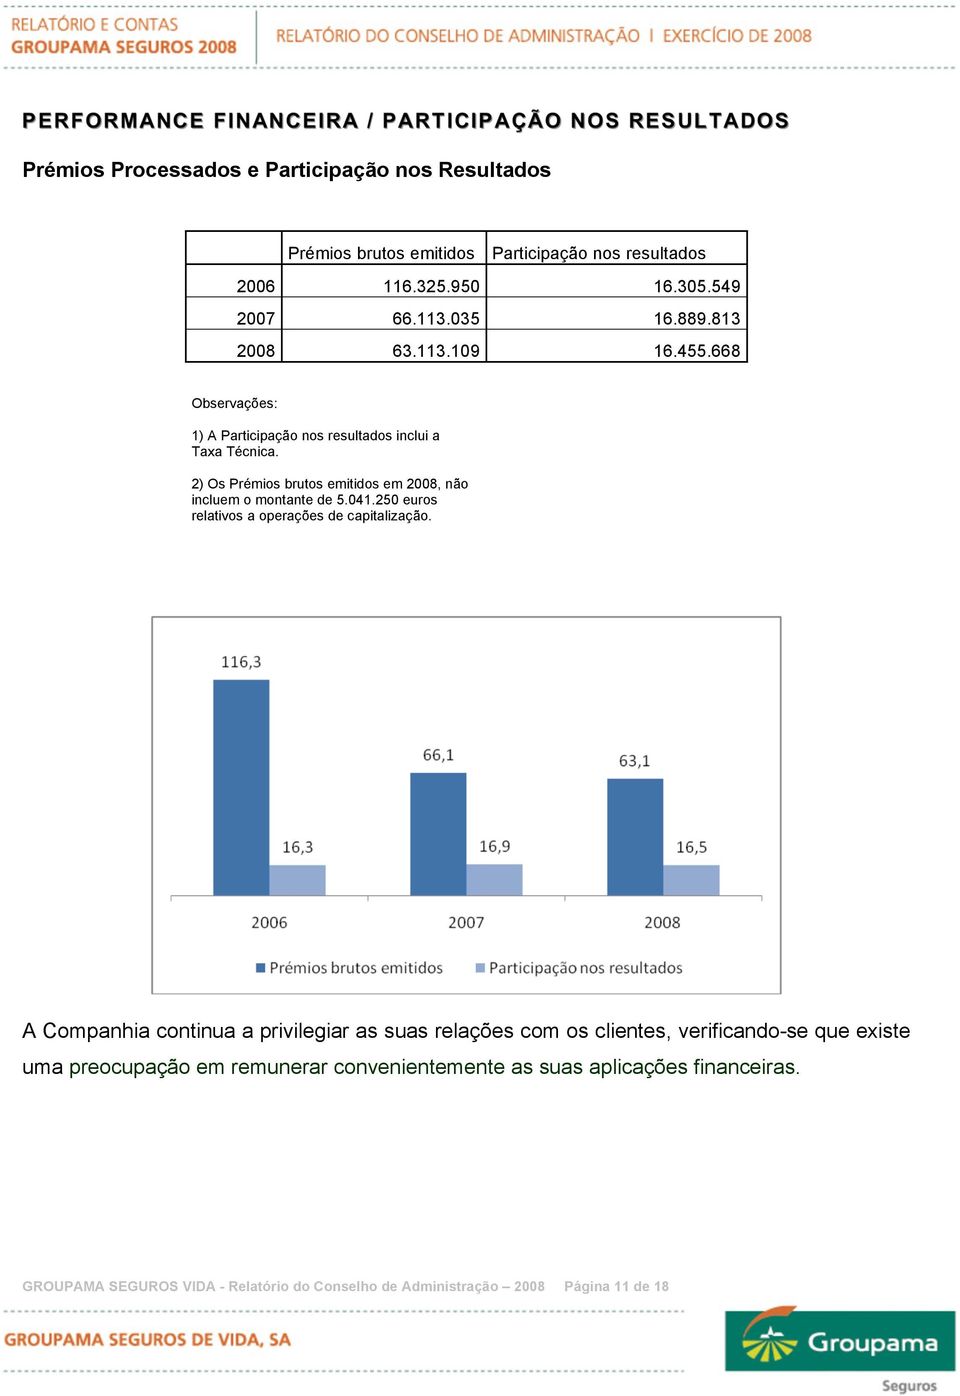 2) Os Prémios brutos emitidos em 2008, não incluem o montante de 5.041.250 euros relativos a operações de capitalização.